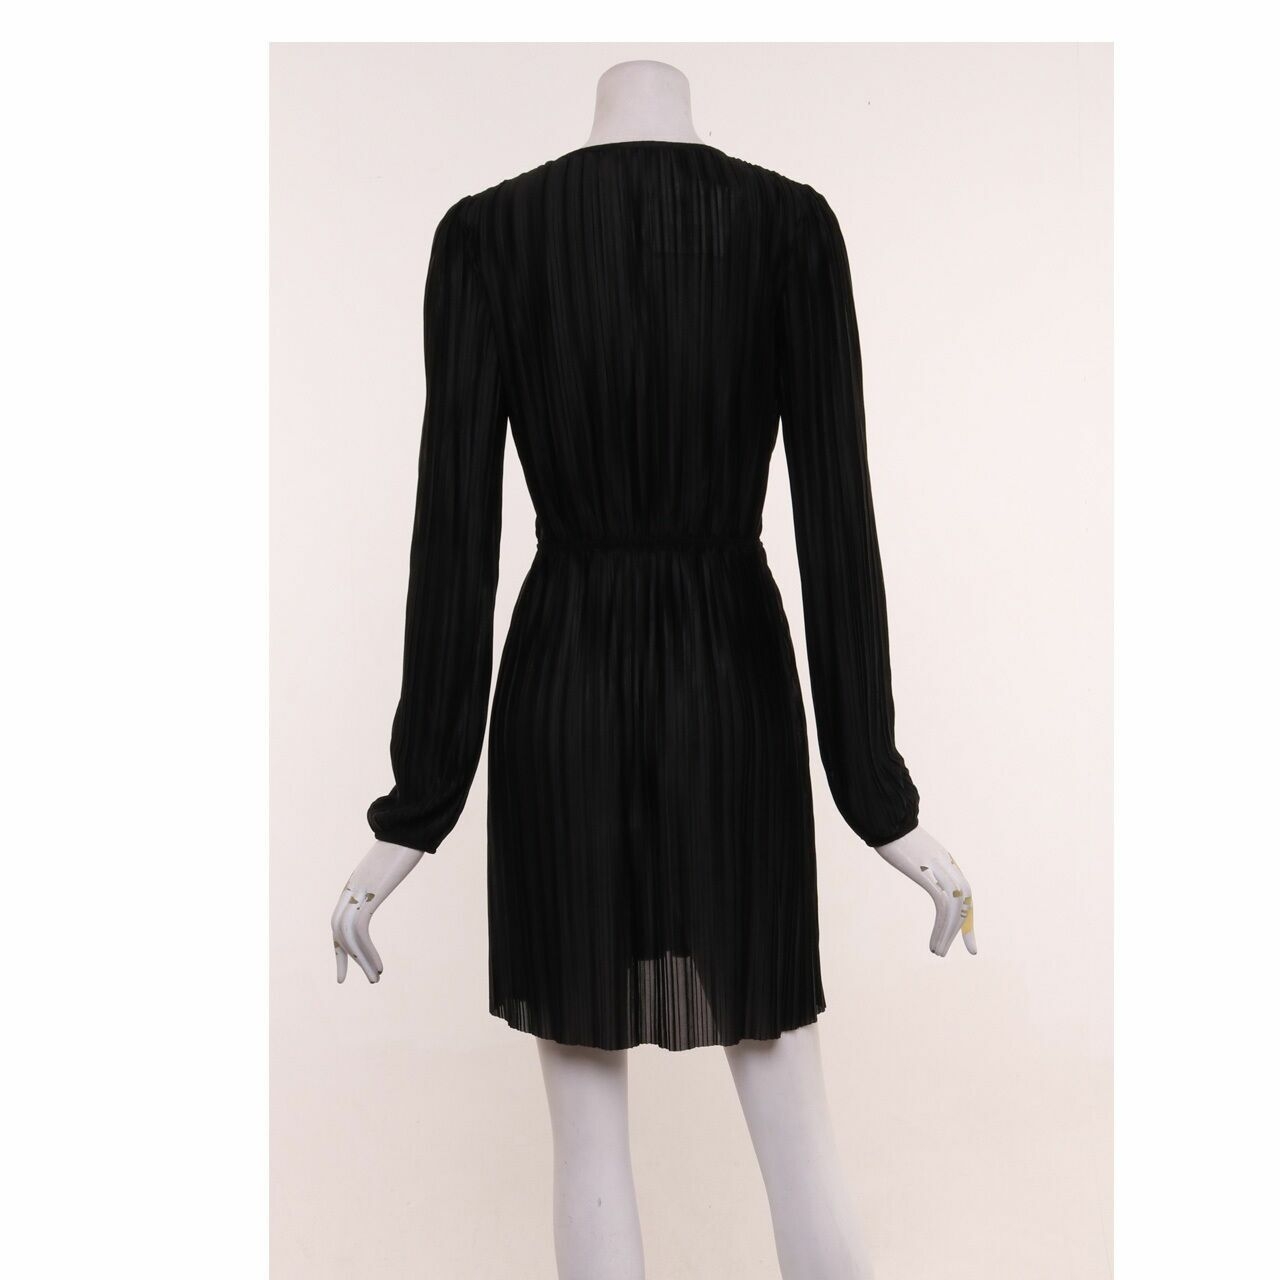 Zara Black Mini Dress